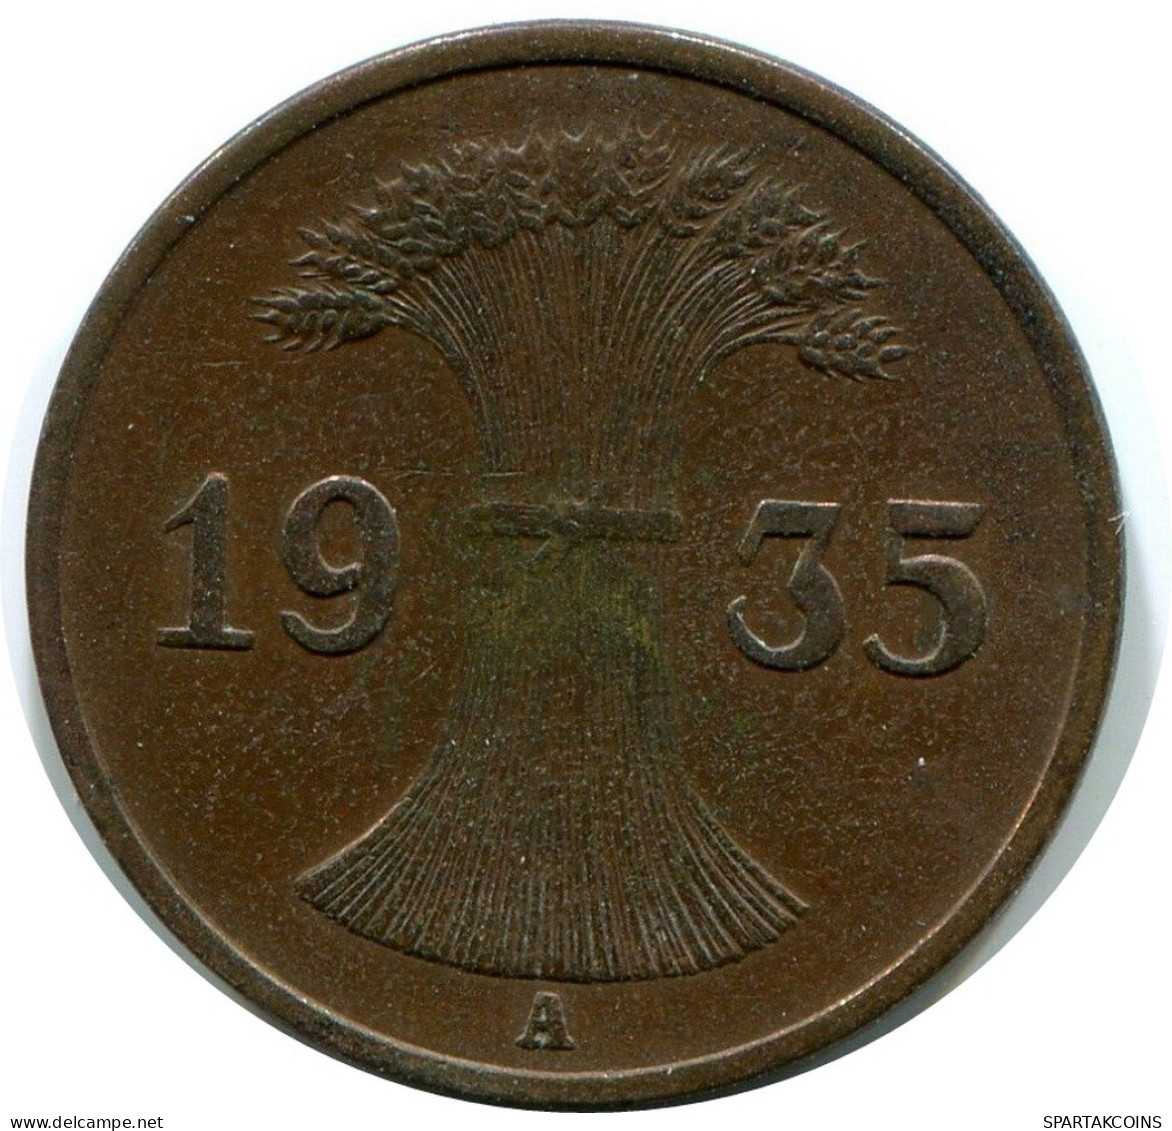 1 REICHSPFENNIG 1935 A ALEMANIA Moneda GERMANY #DA778.E.A - 1 Reichspfennig